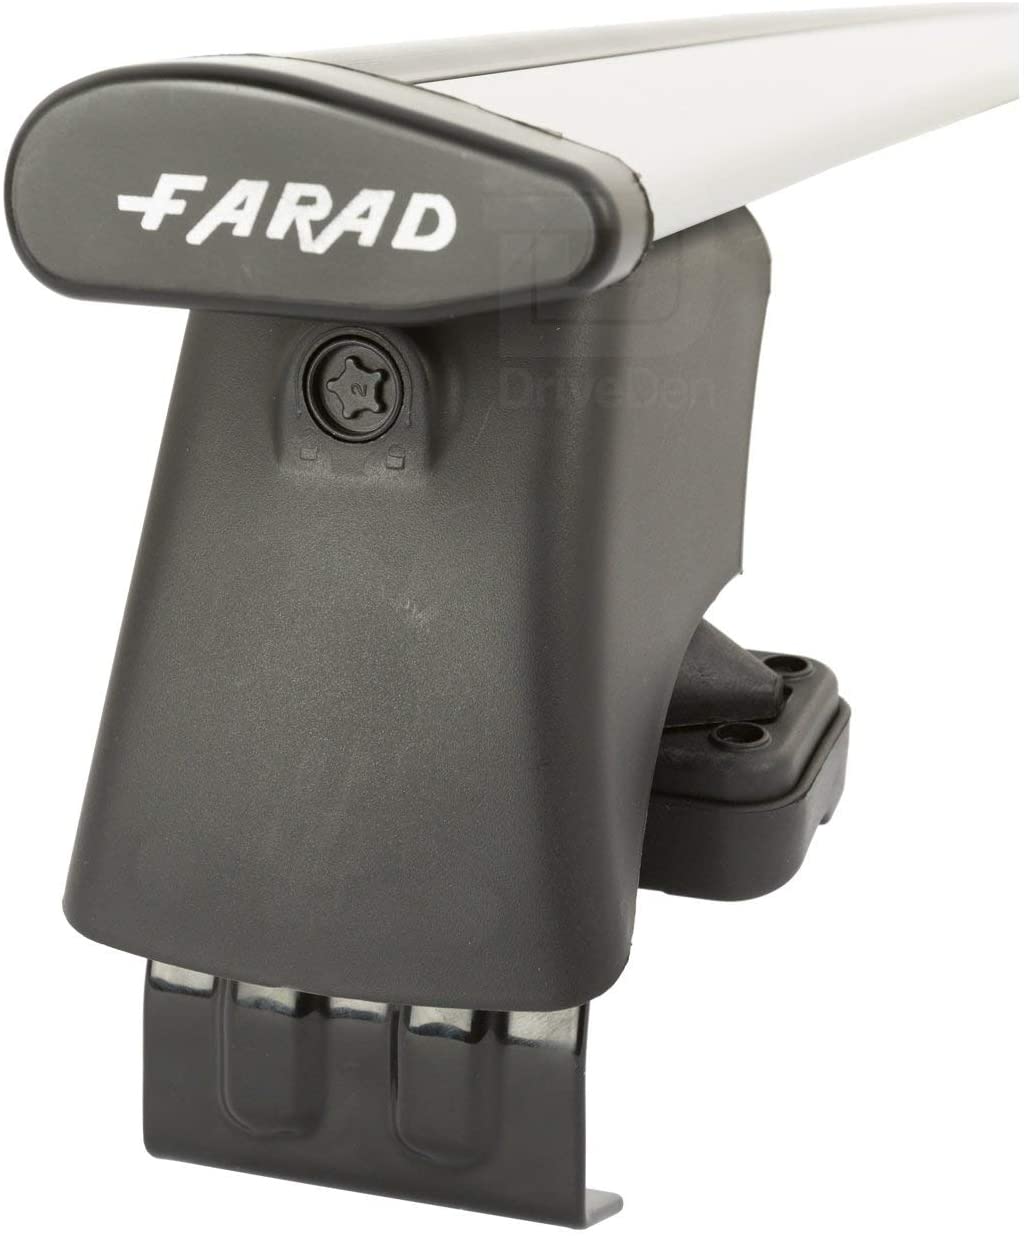 FARAD-Kit H2 per barre portatutto - Volkswagen Polo 2009-2017 (senza corrimano)